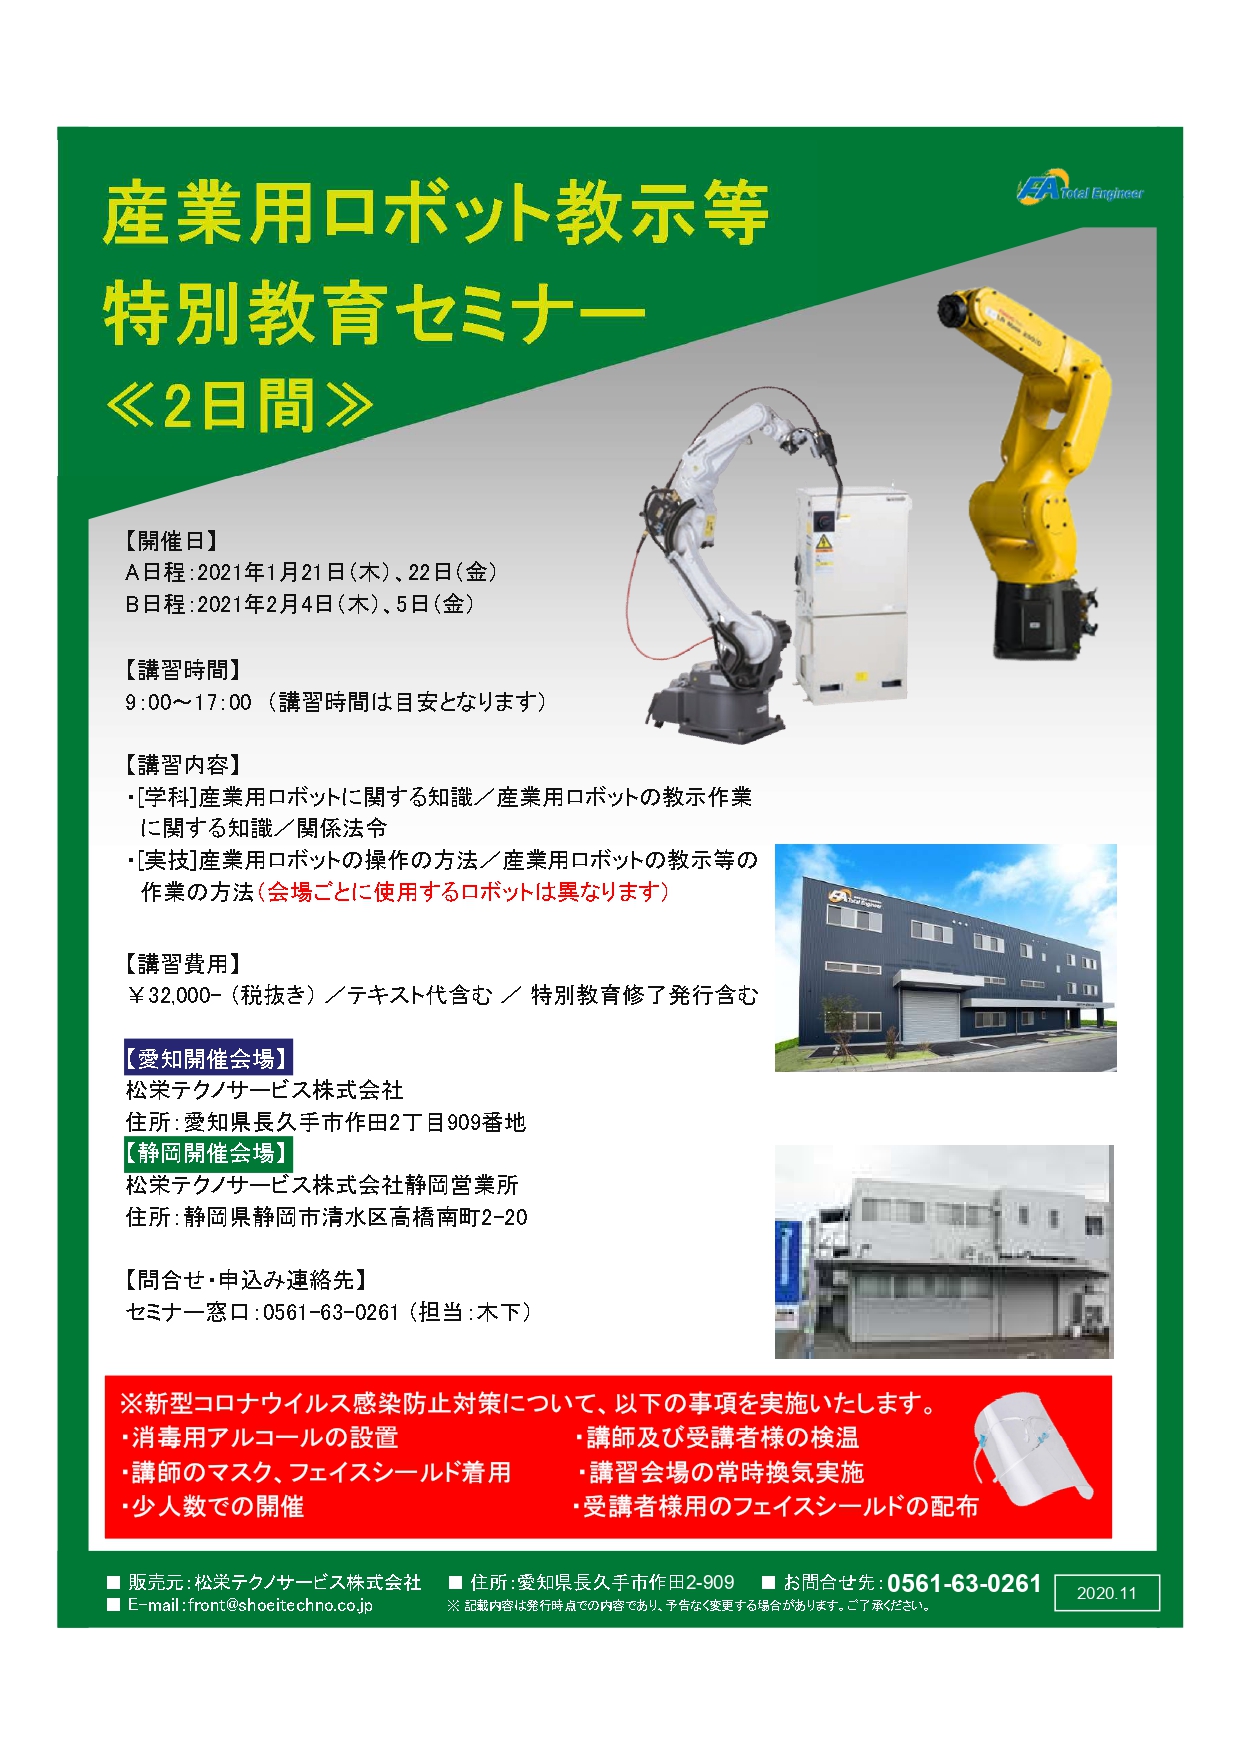 産業用ロボット特別教育開催のお知らせ